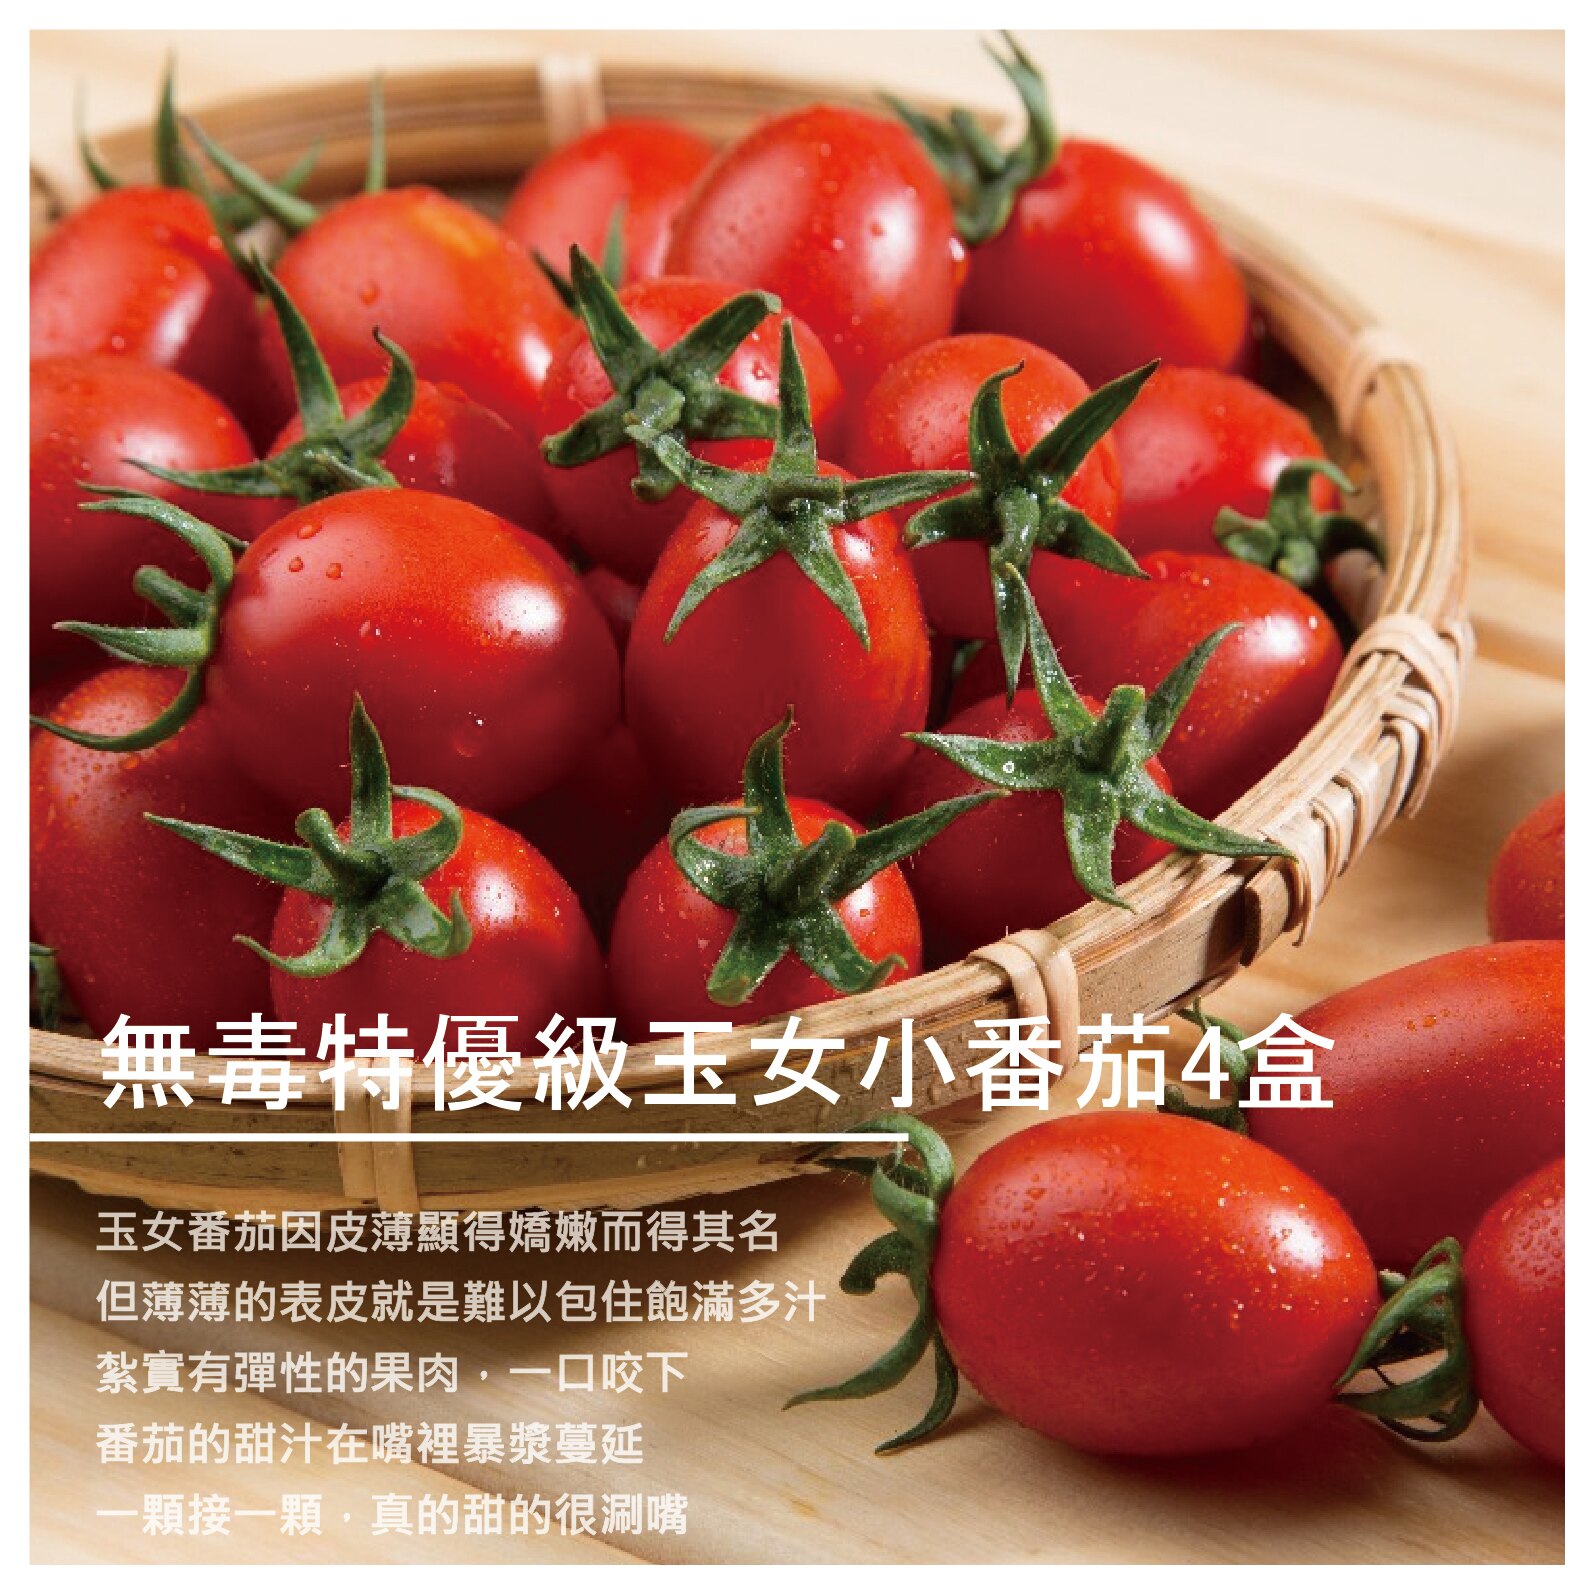 【鴻圖農場】[預購] 無毒特優級玉女小番茄4盒